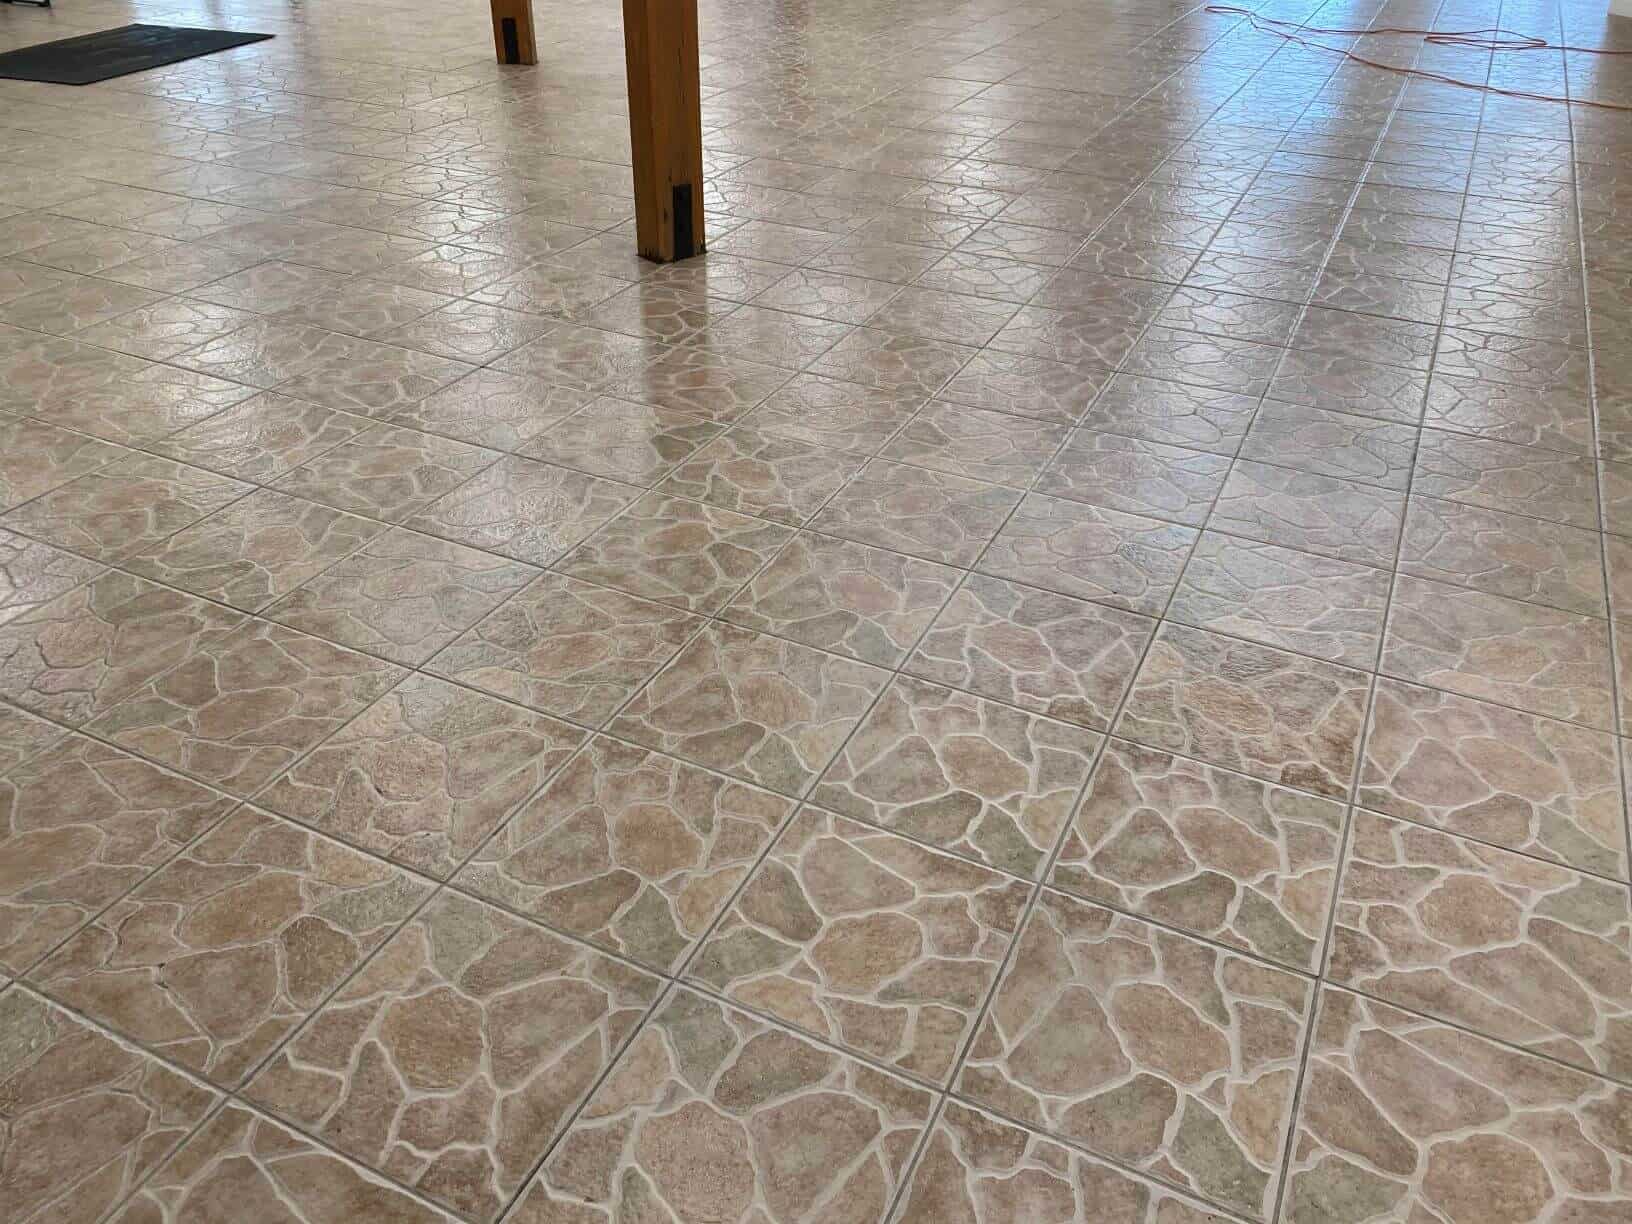 clean floor in commercial building